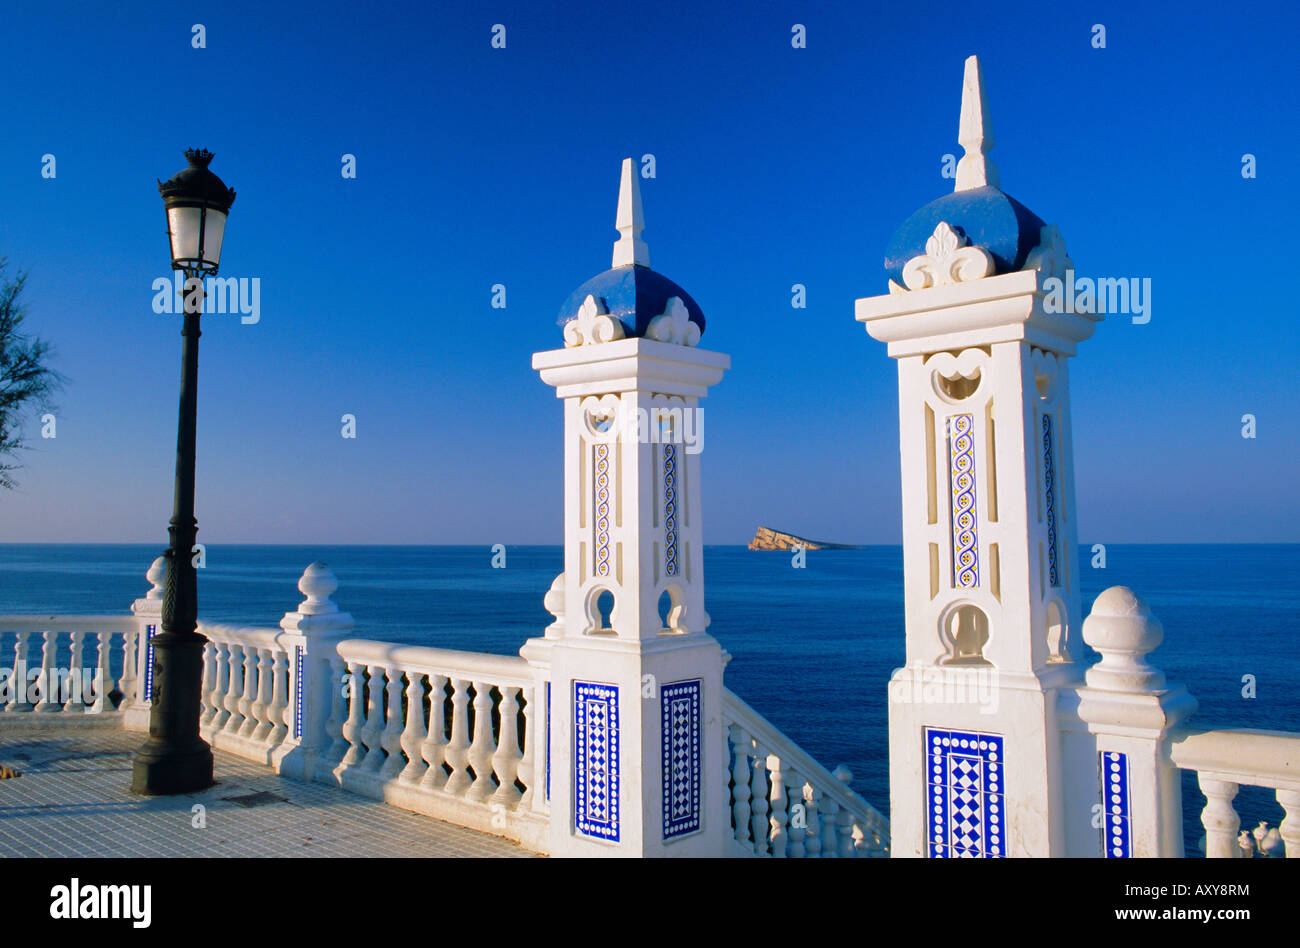 Le Balcon del Mediterraneo, Benidorm, Alicante, Valence, Espagne, Europe Banque D'Images